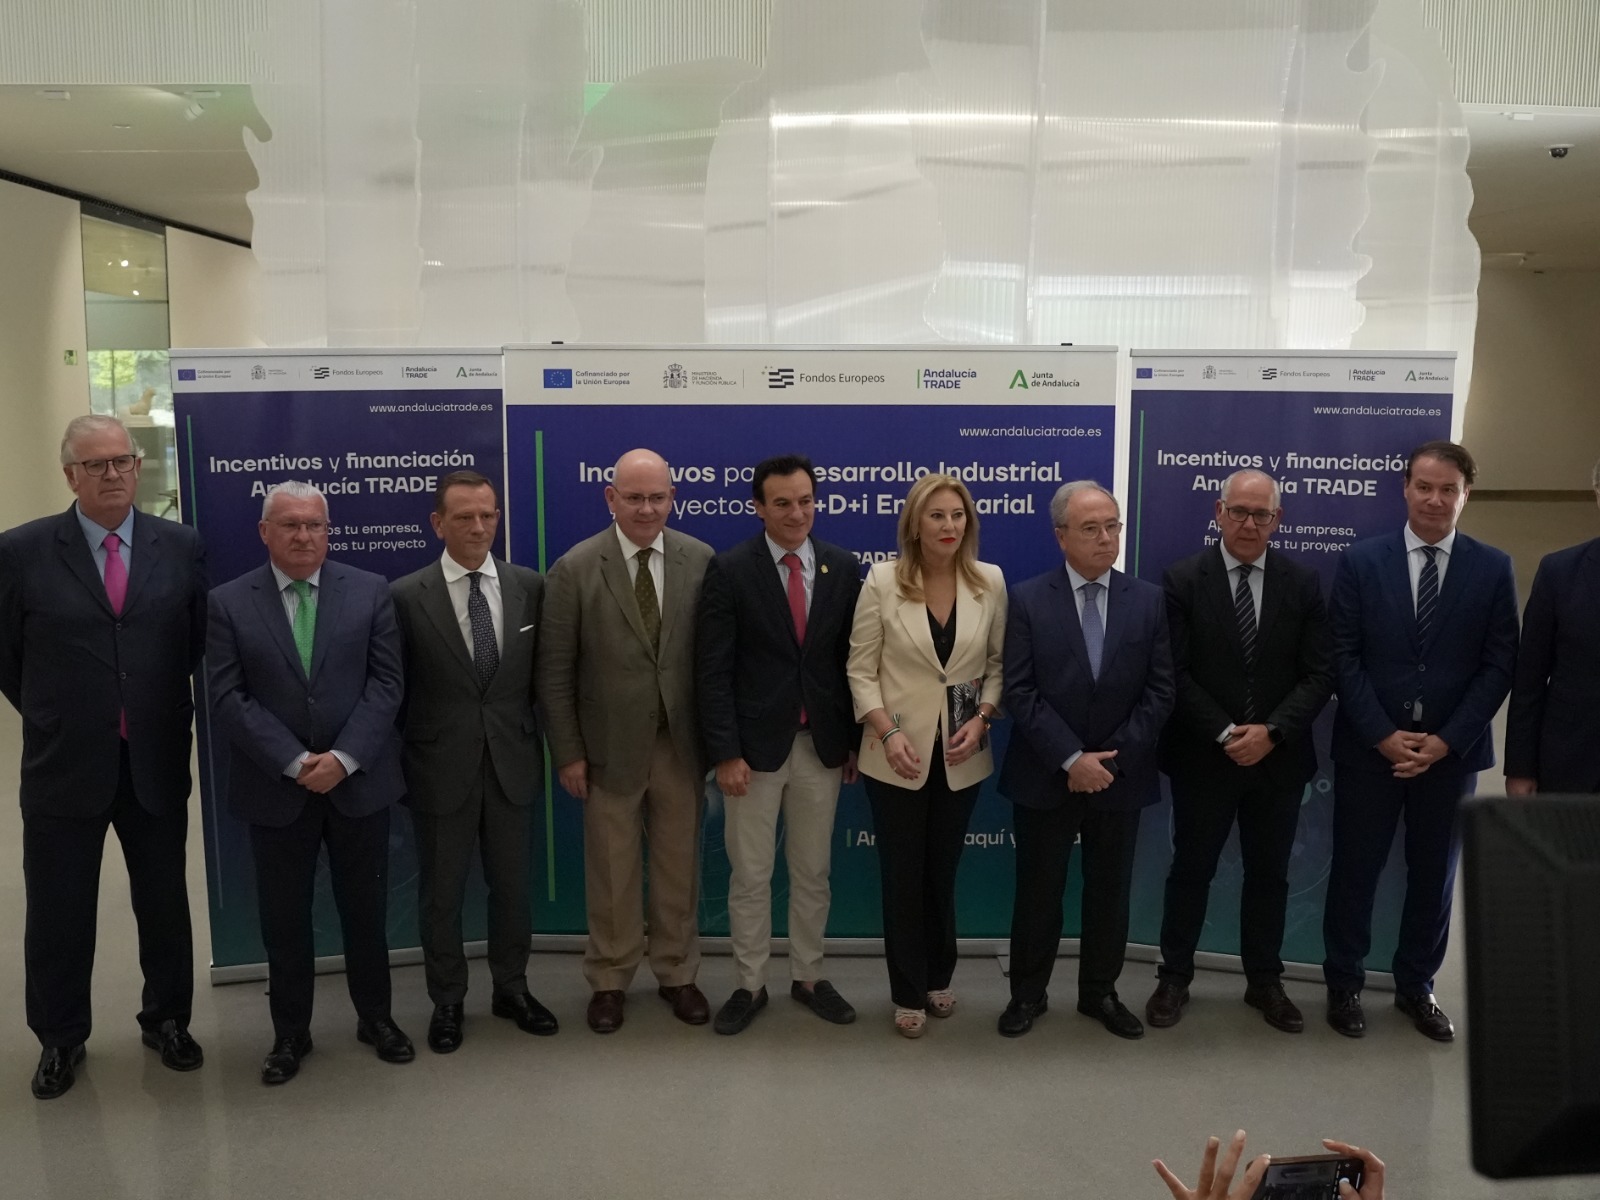 Presentación en Jaén de los incentivos de Andalucía TRADE